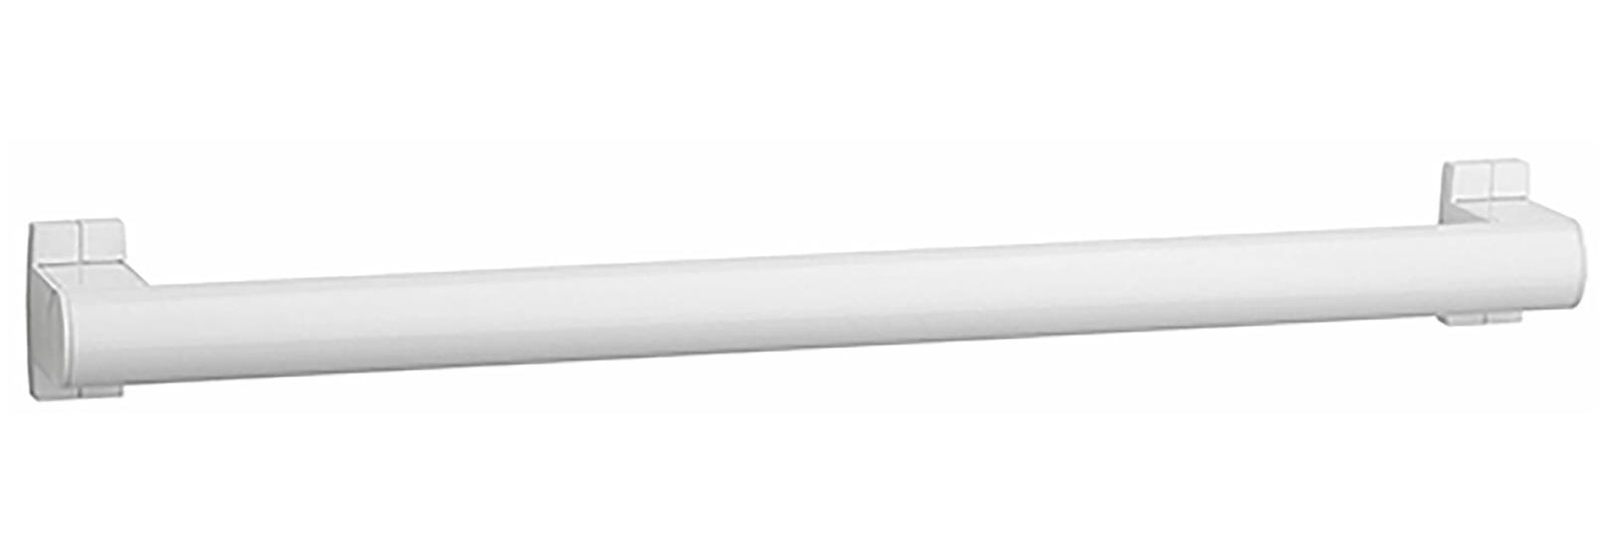 Barre d'appui droite ARSIS - Finition : Blanc - Longueur 600 mm